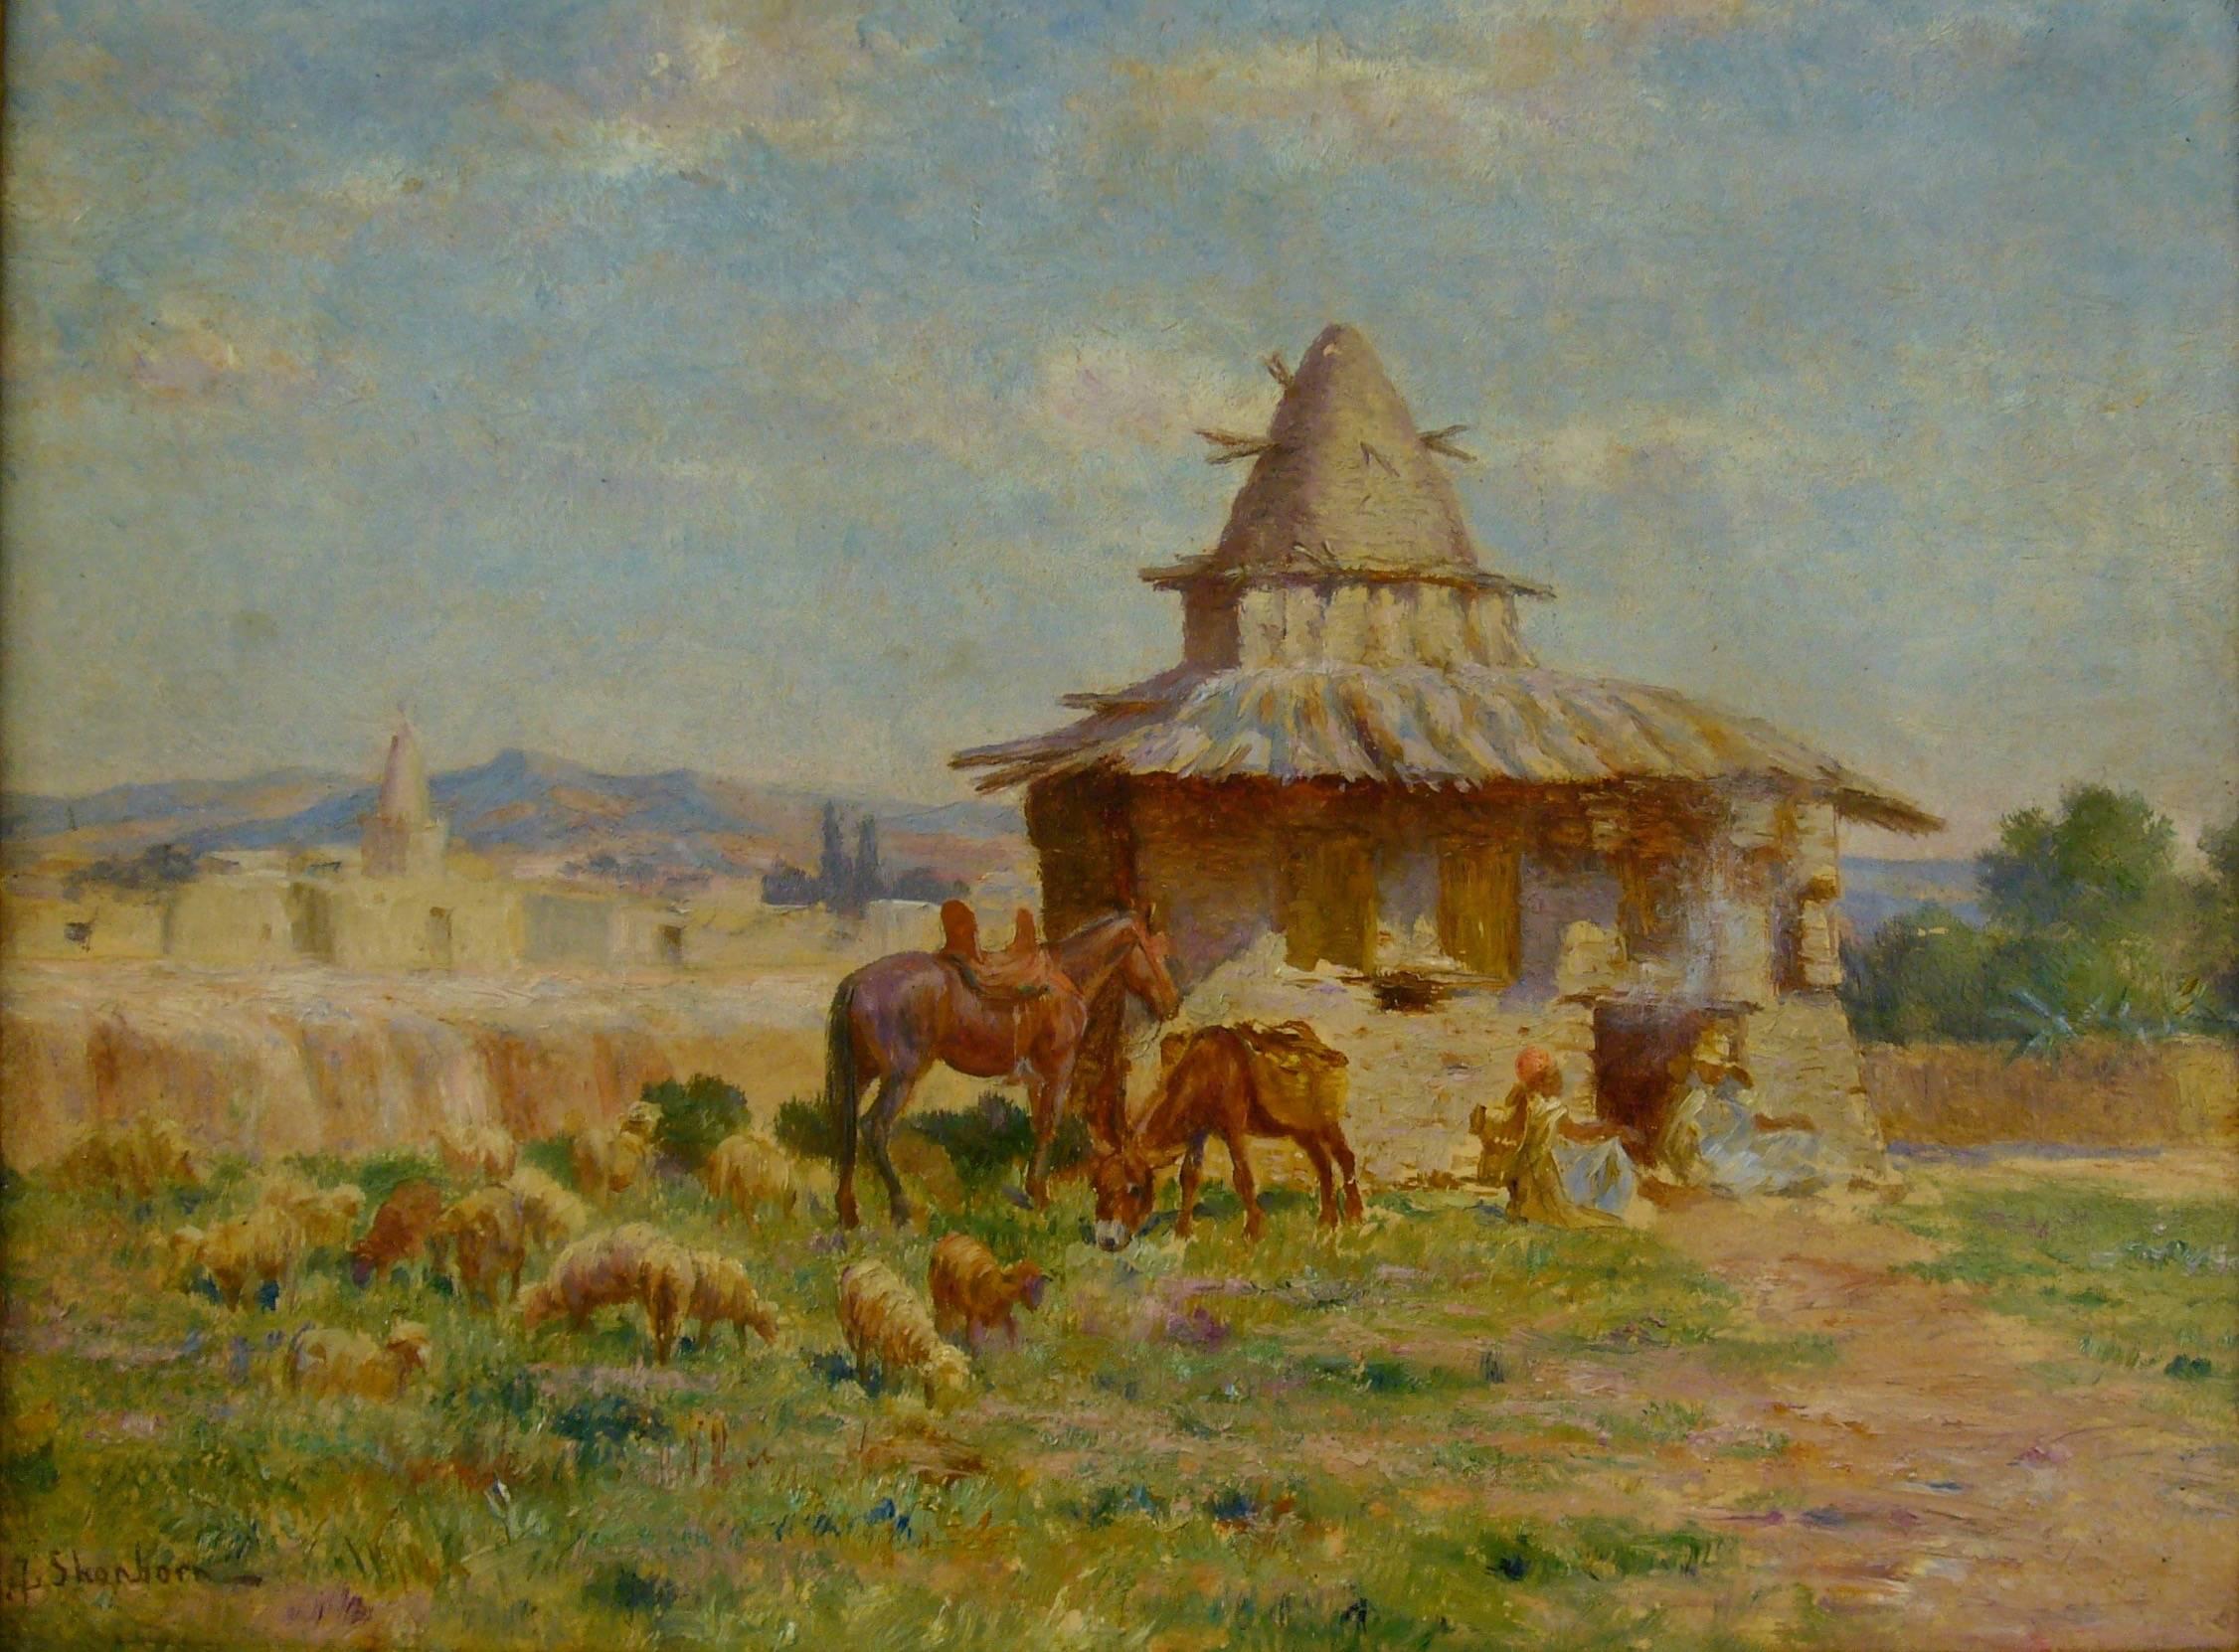 John Lewis Shonborn Landscape Painting - Cabane de l'ermite algérien de M'Sila" (Hut of Algerian Hermit of M’Sila)